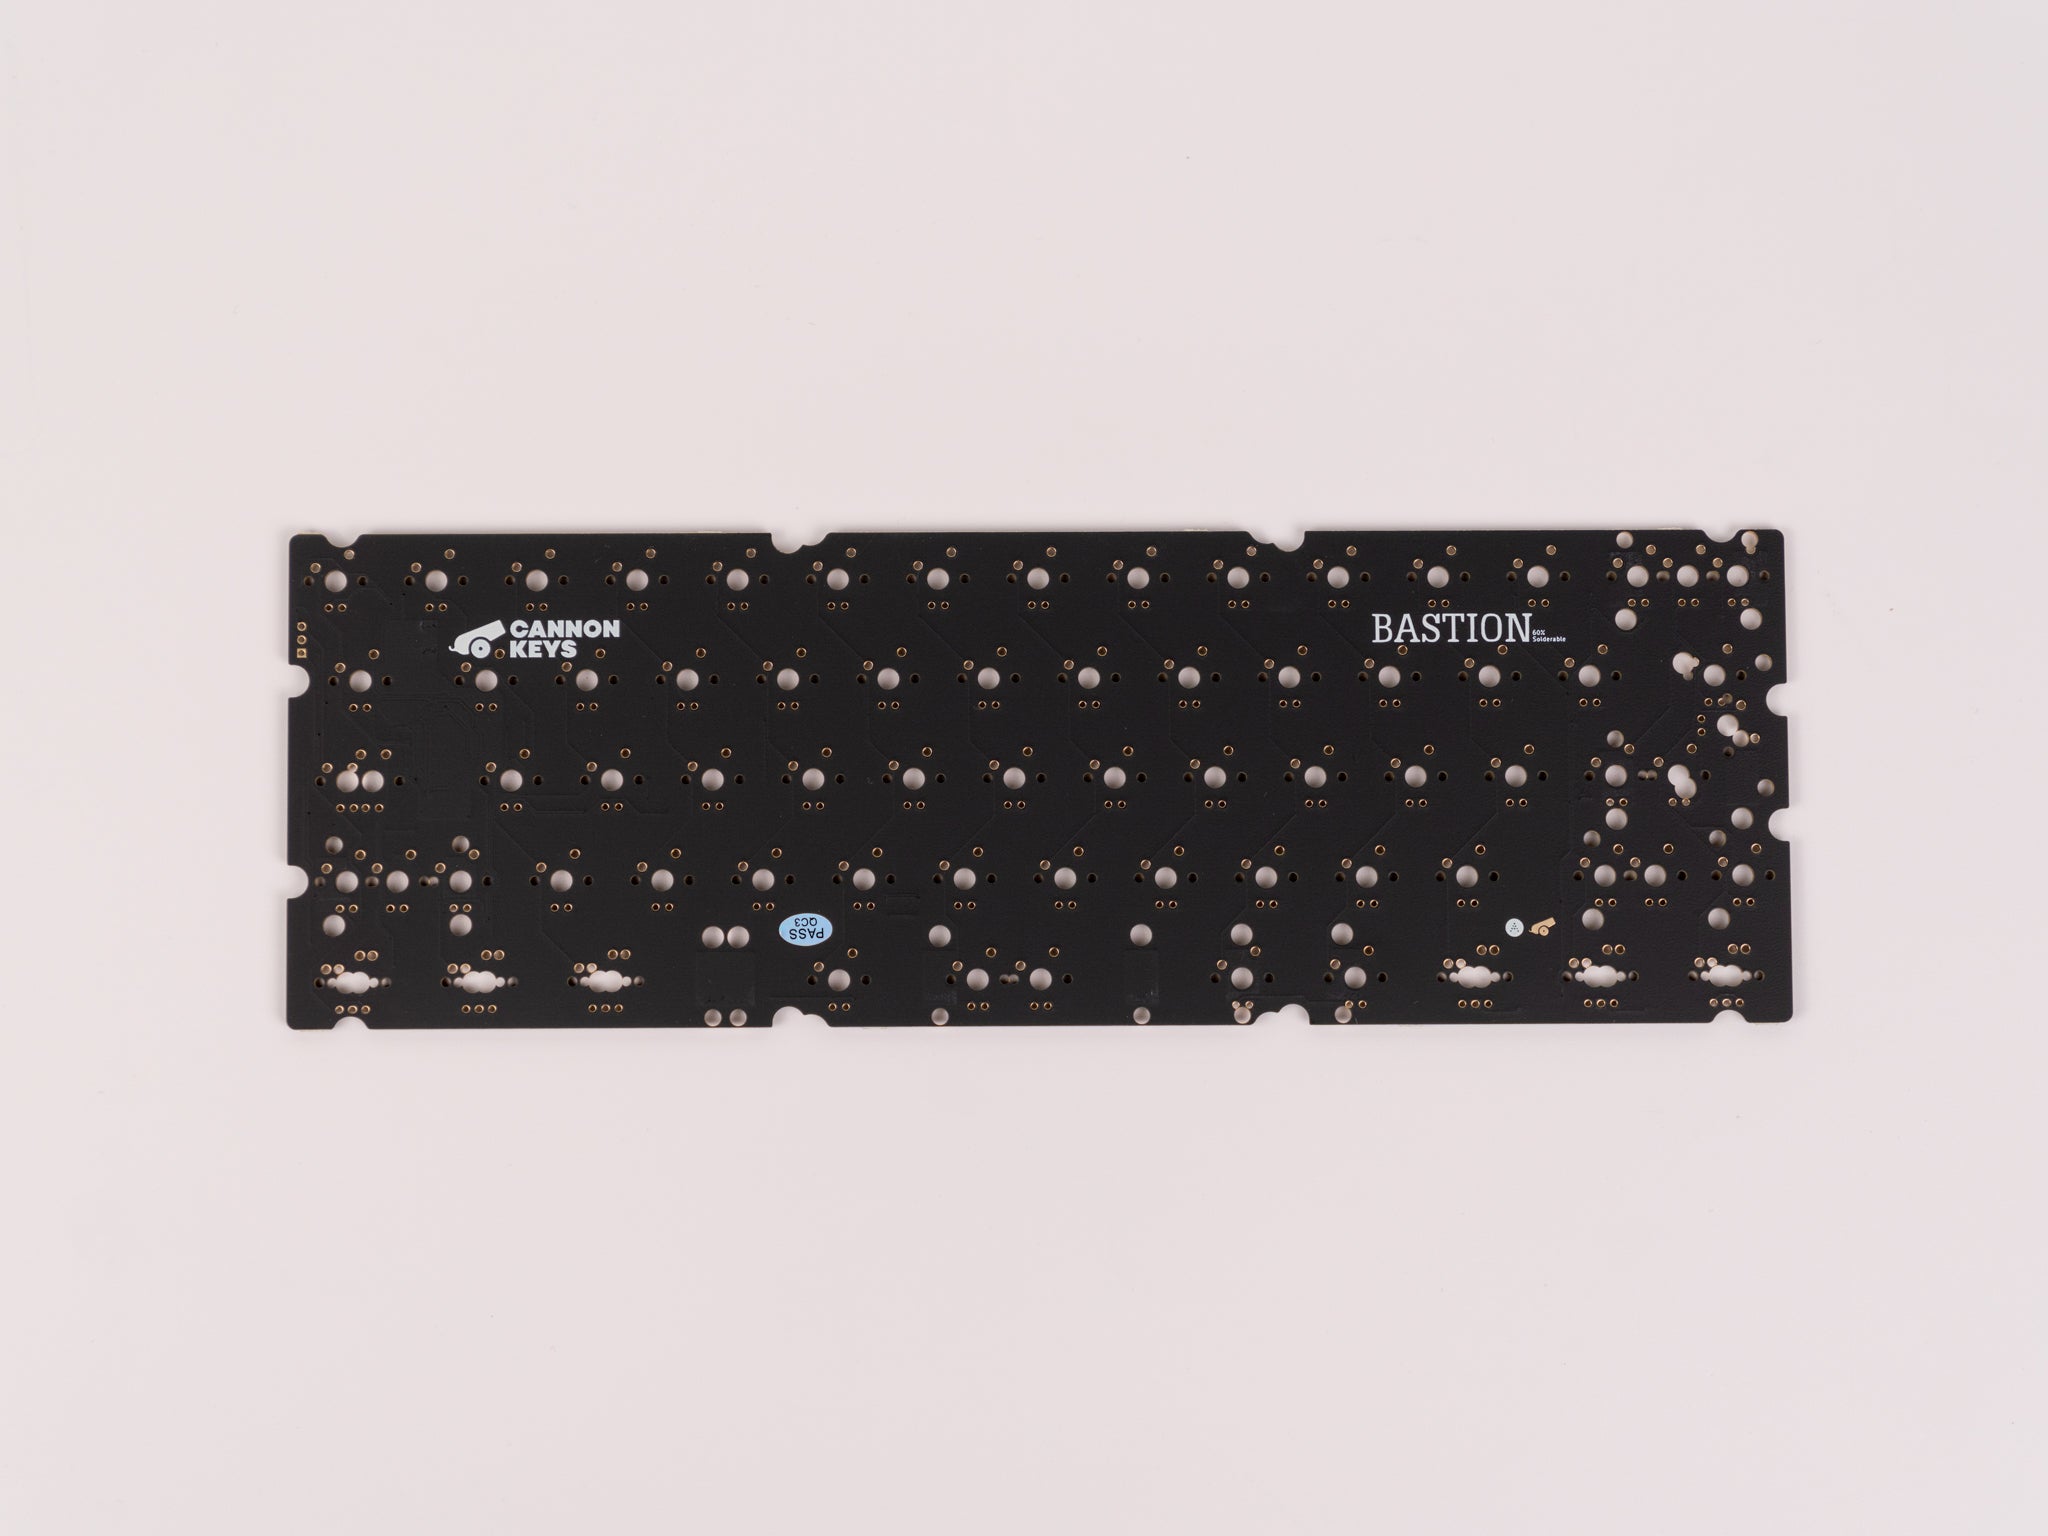 Brutal v2 60% Keyboard - PCB Addons